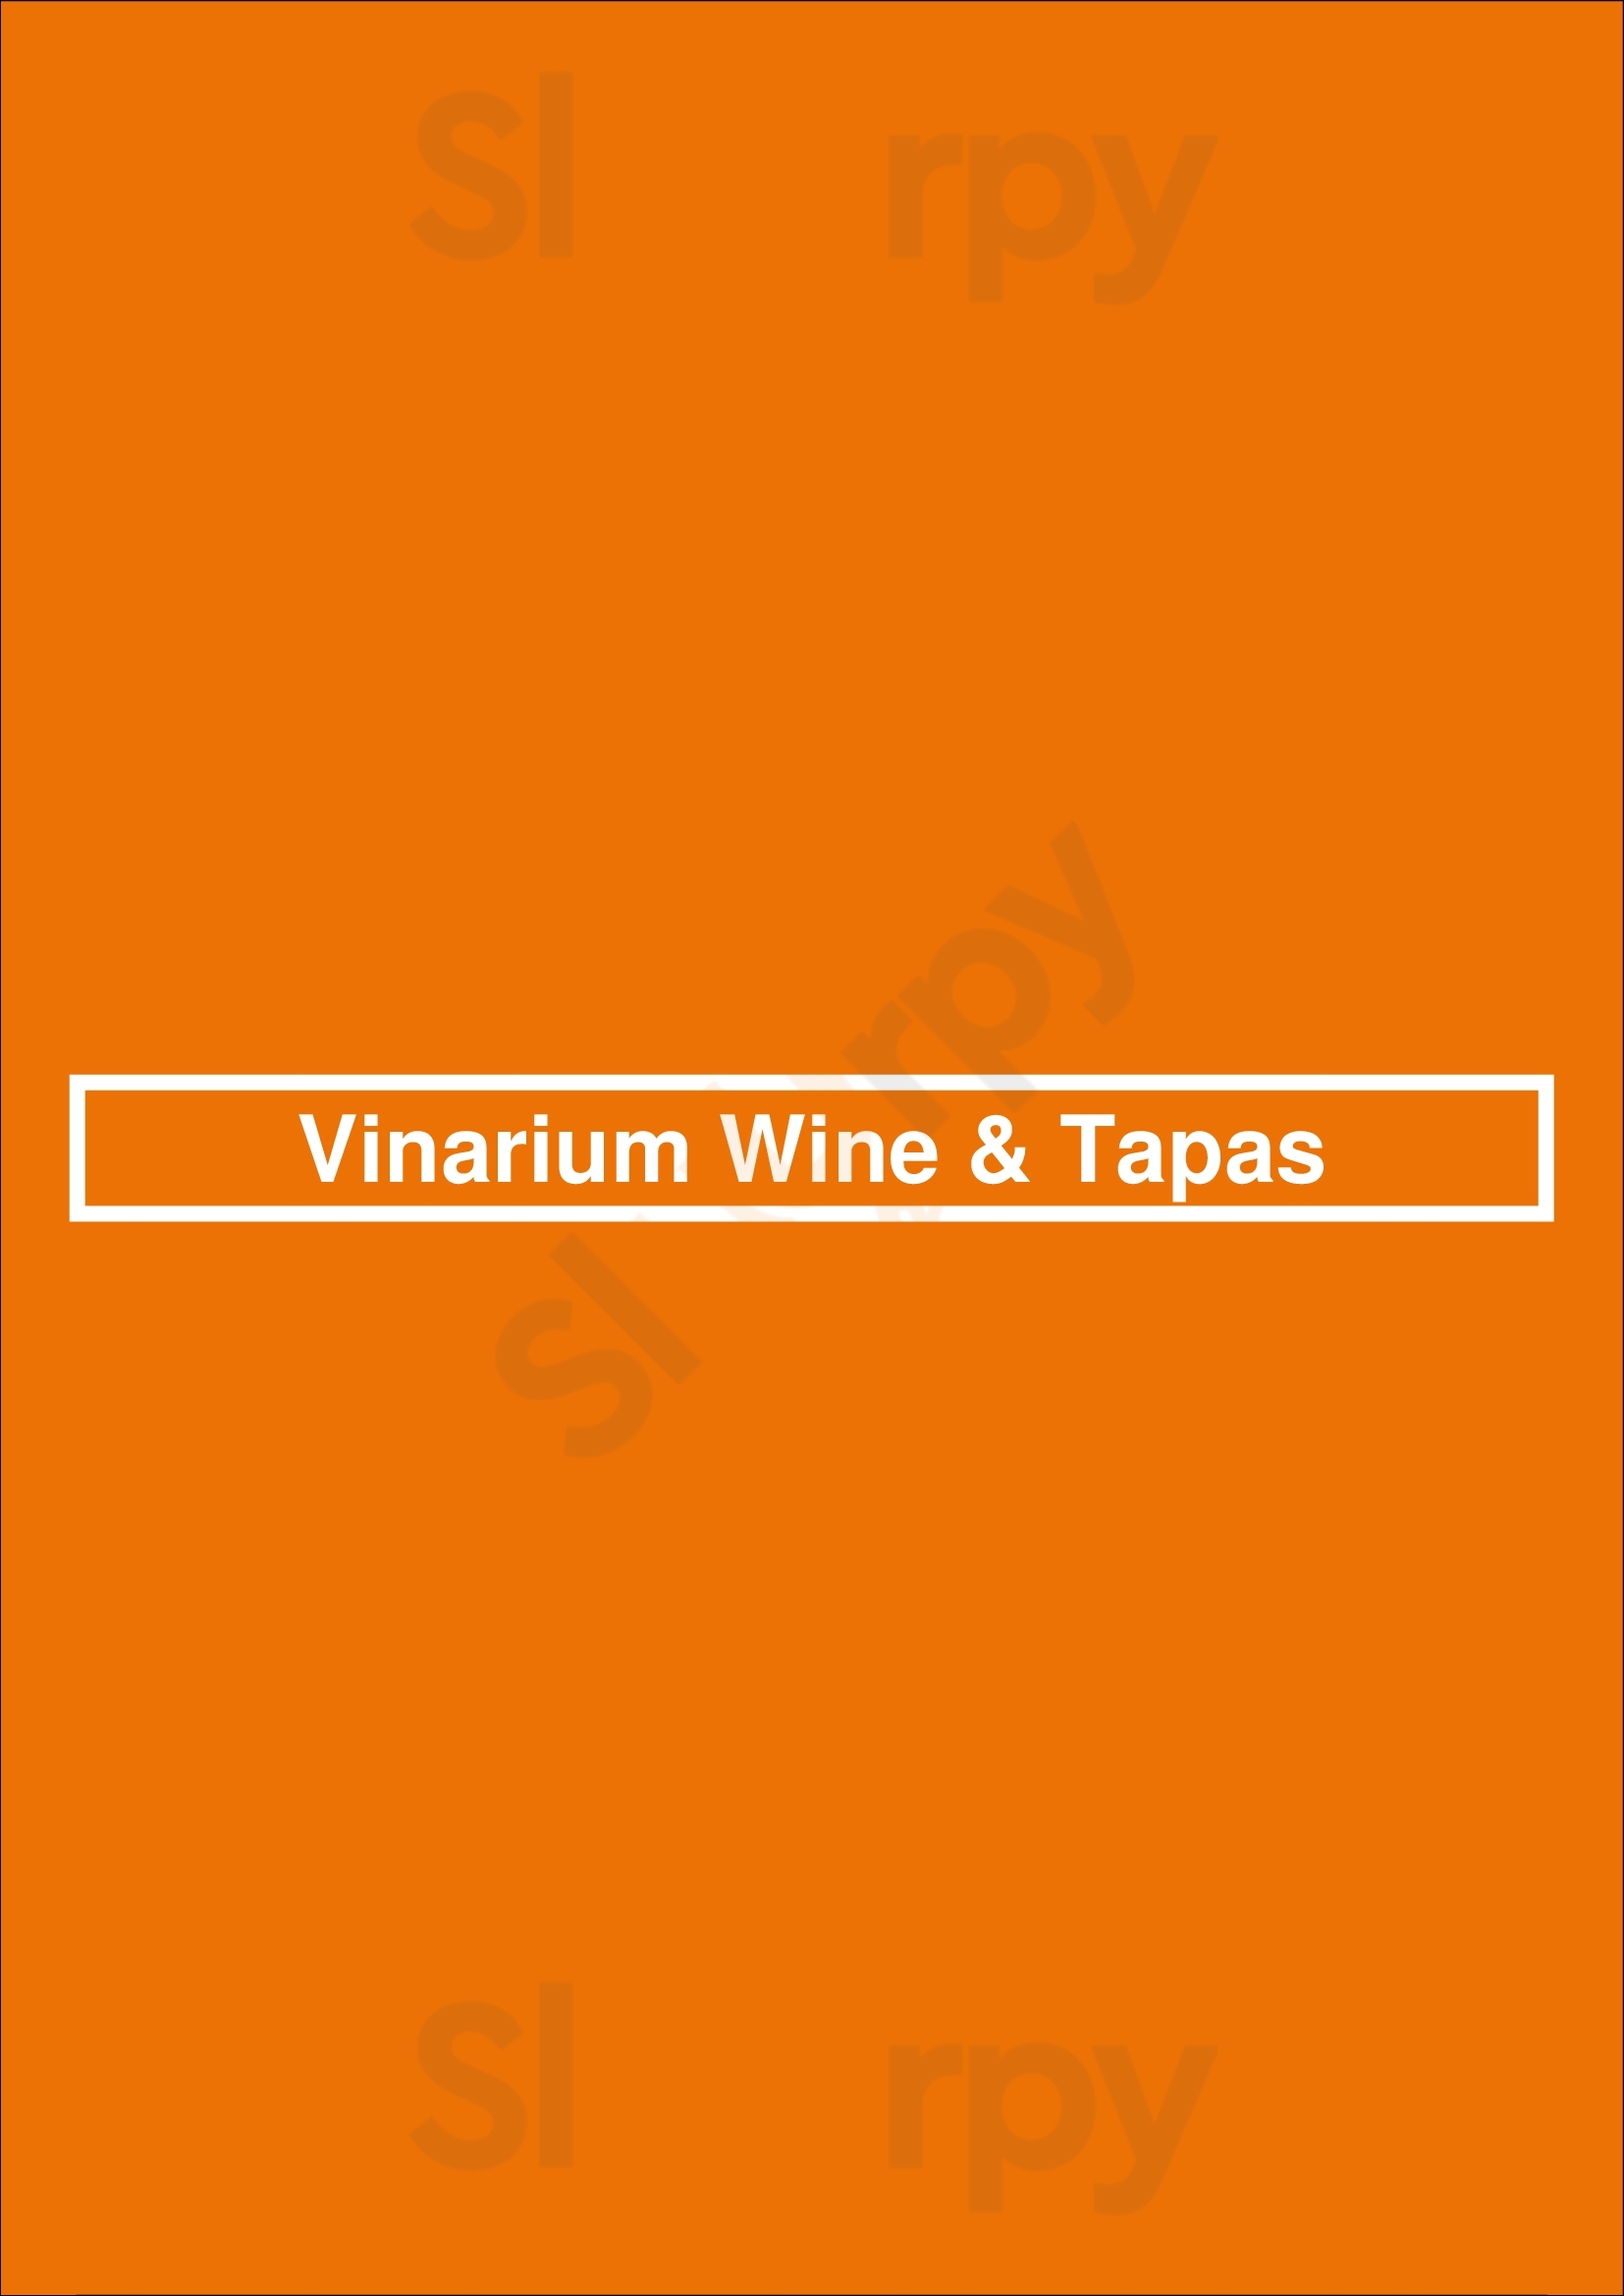 Vinarium Wine & Tapas Évora Menu - 1